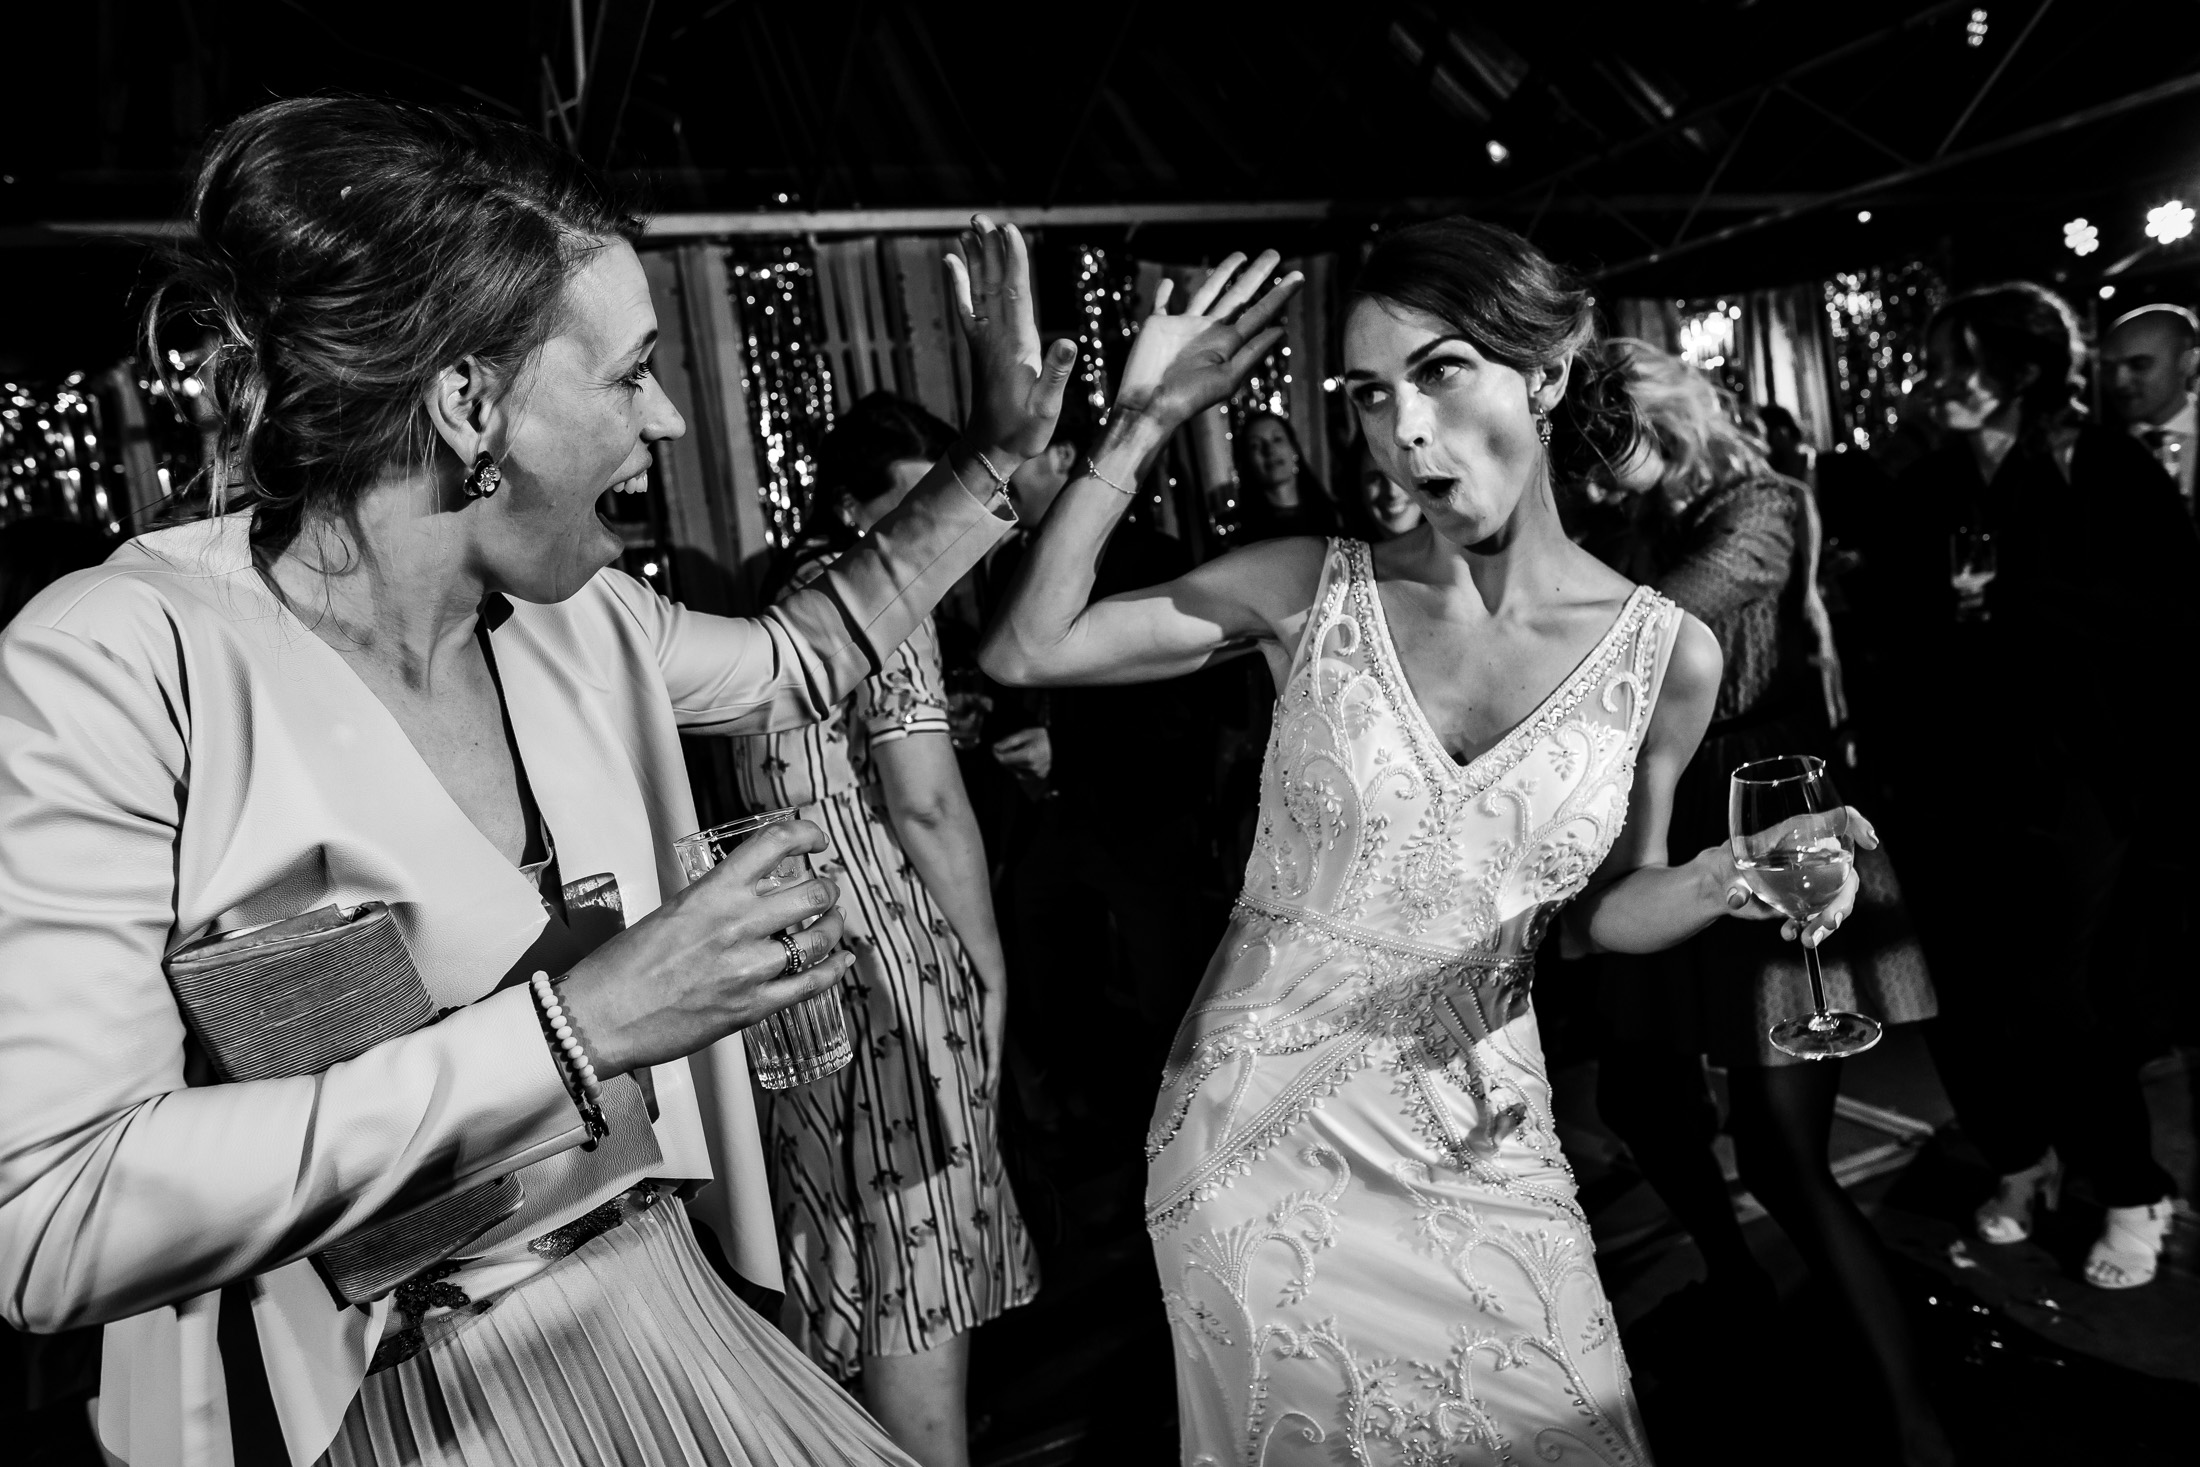 Trouwen in een kas | Bruiloft in een kas | Trouwlocatie kas | Bruidsfotograaf Haarlem,